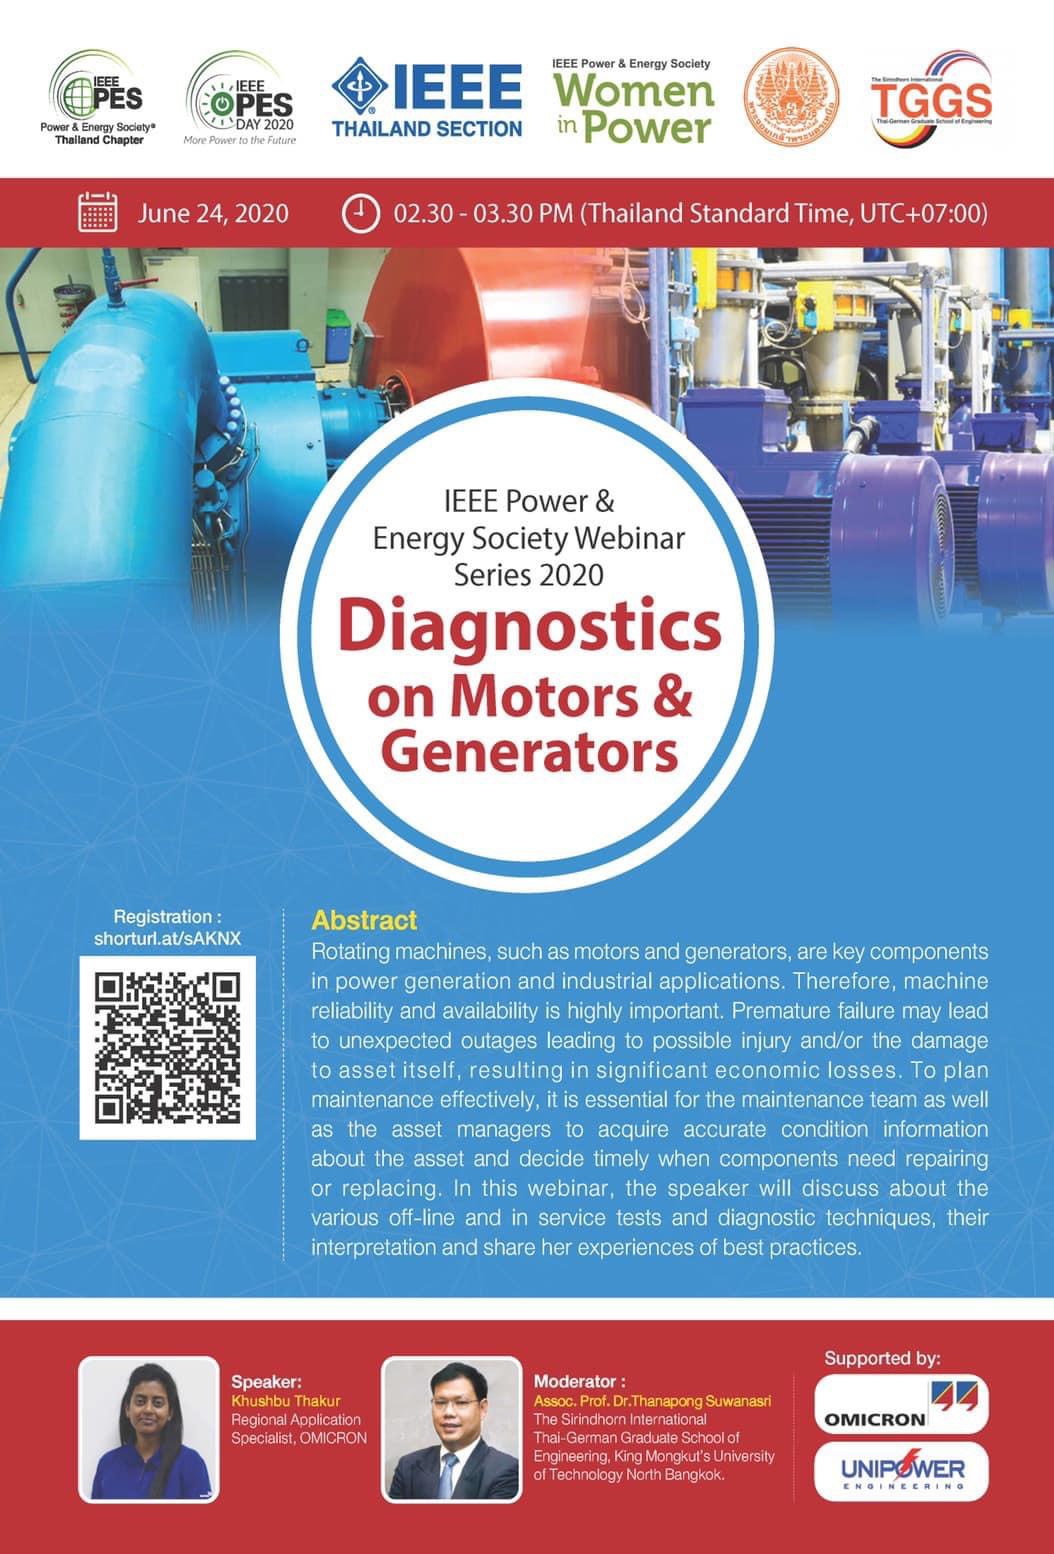 IEEE Thailand PES Chapter Webinar on Diagnostics on Motors & Generators